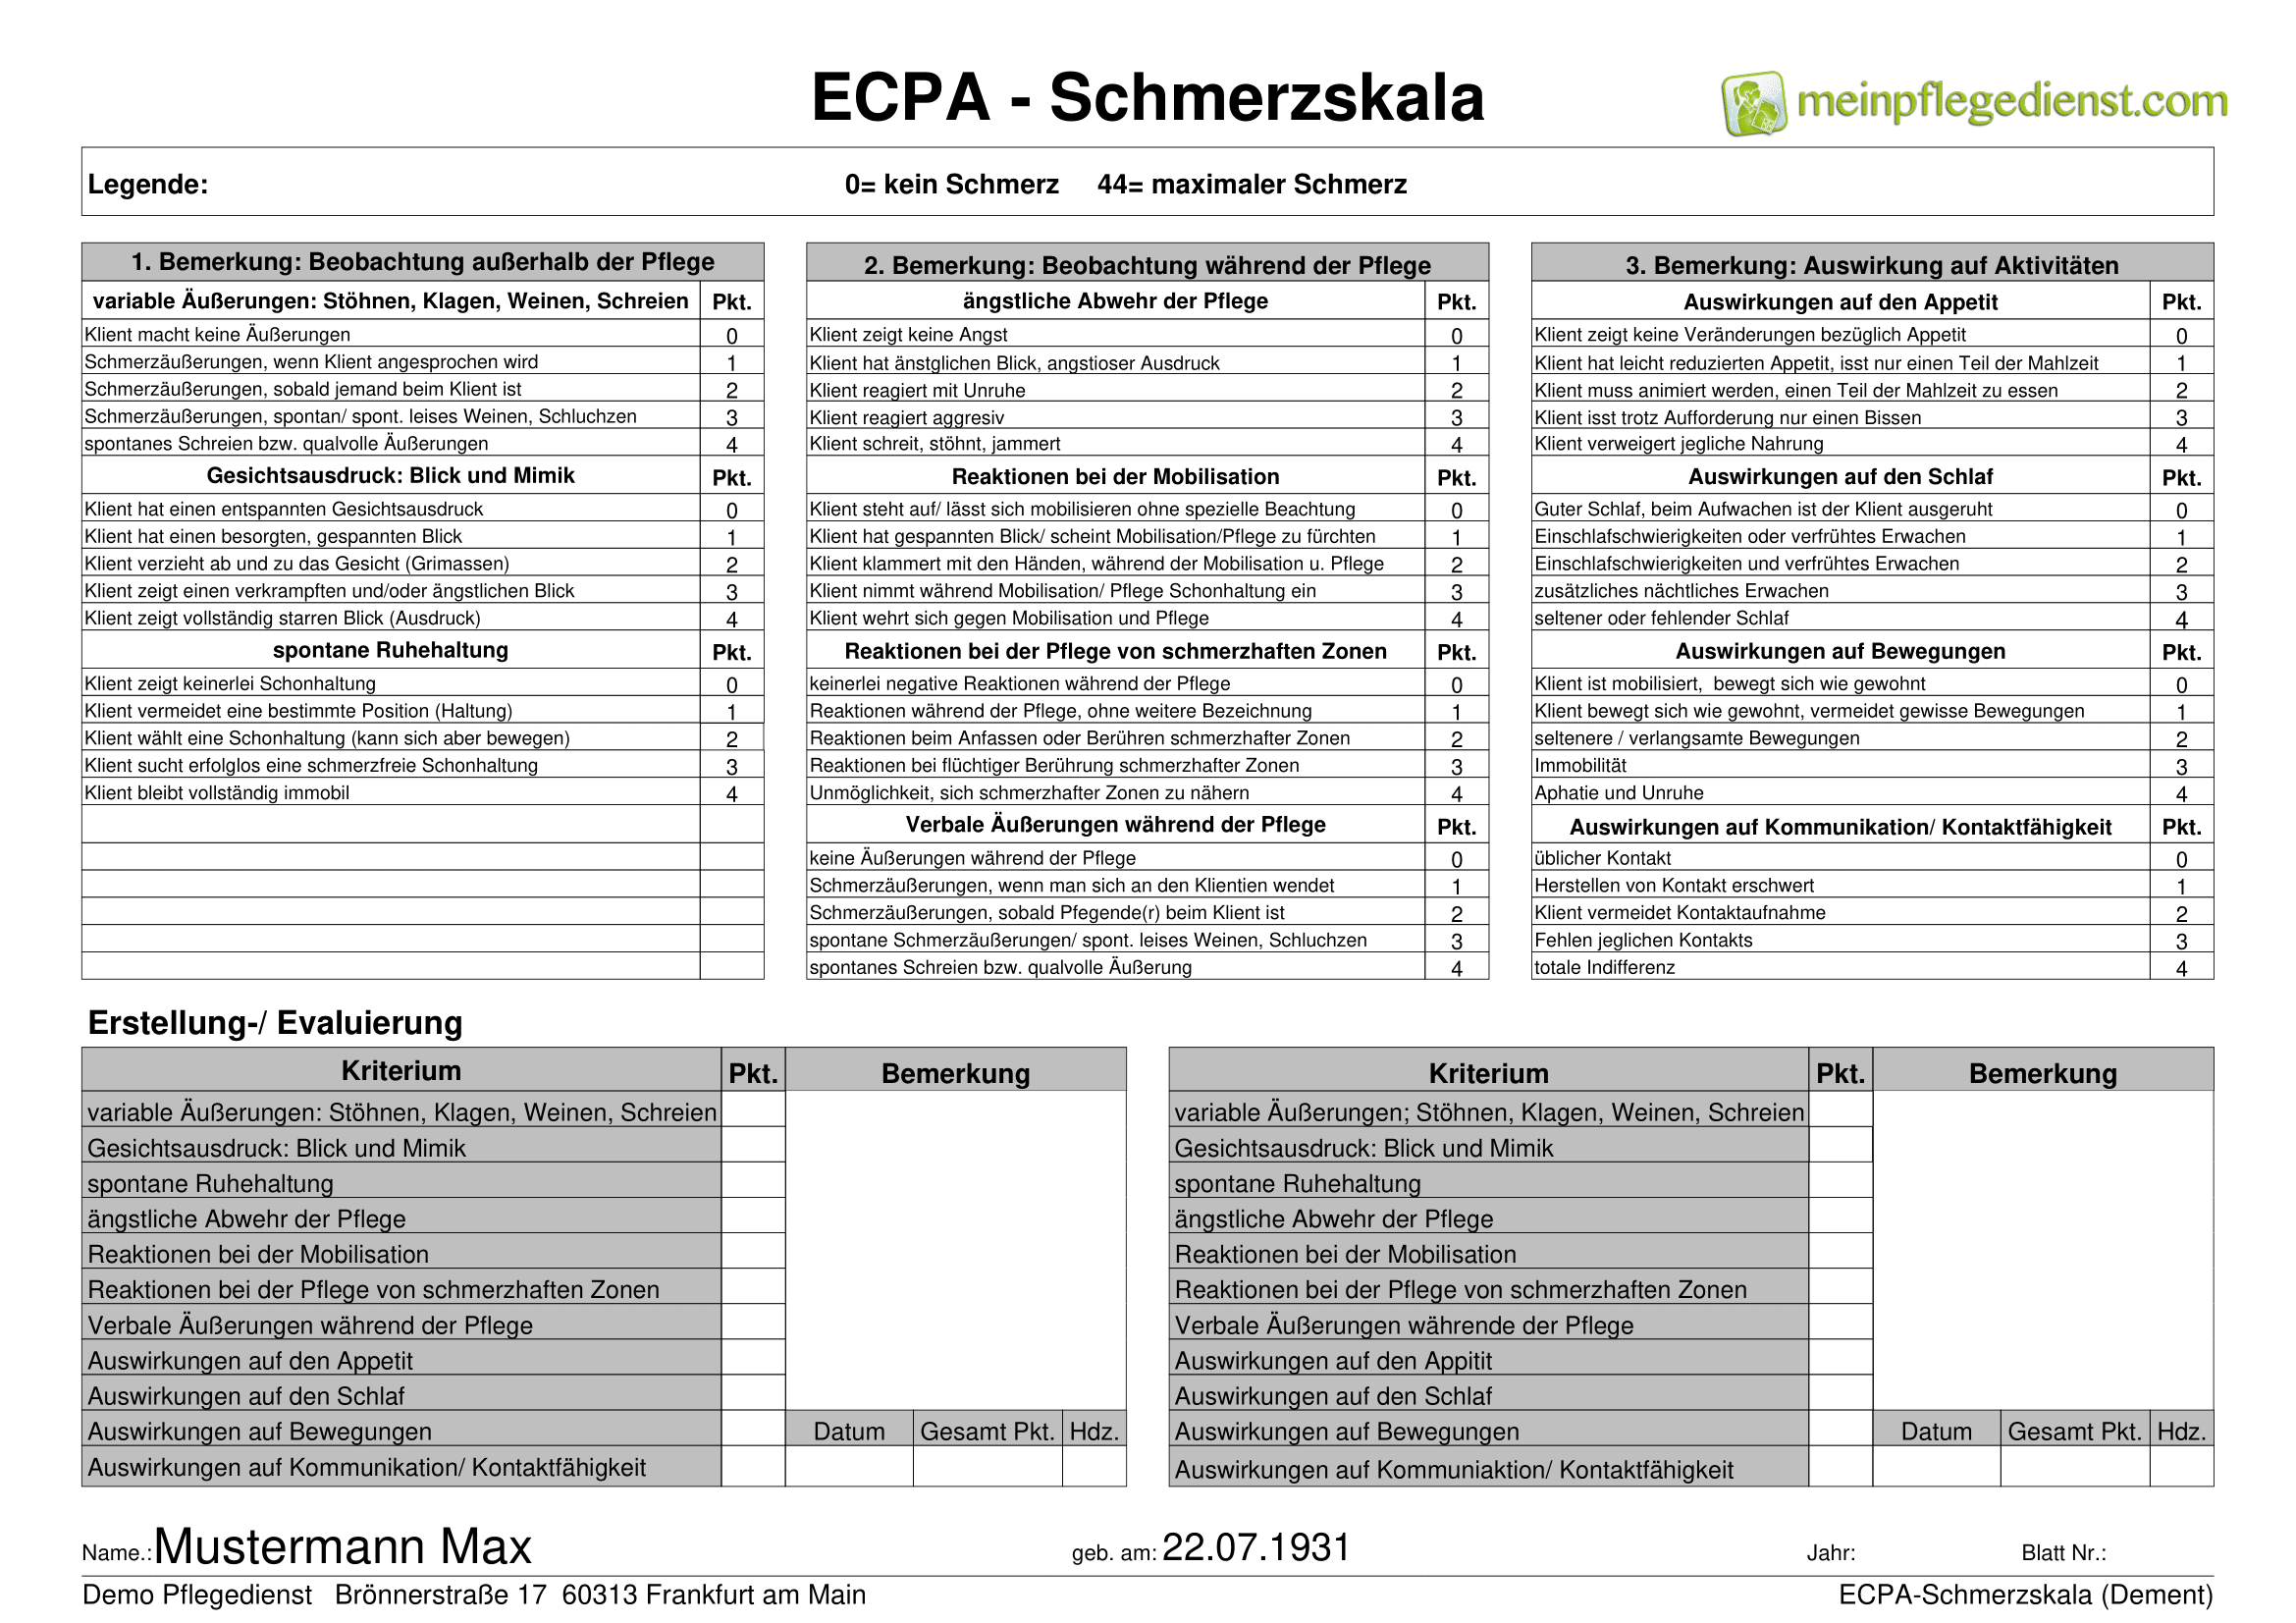 ECPA - Schmerzskala 